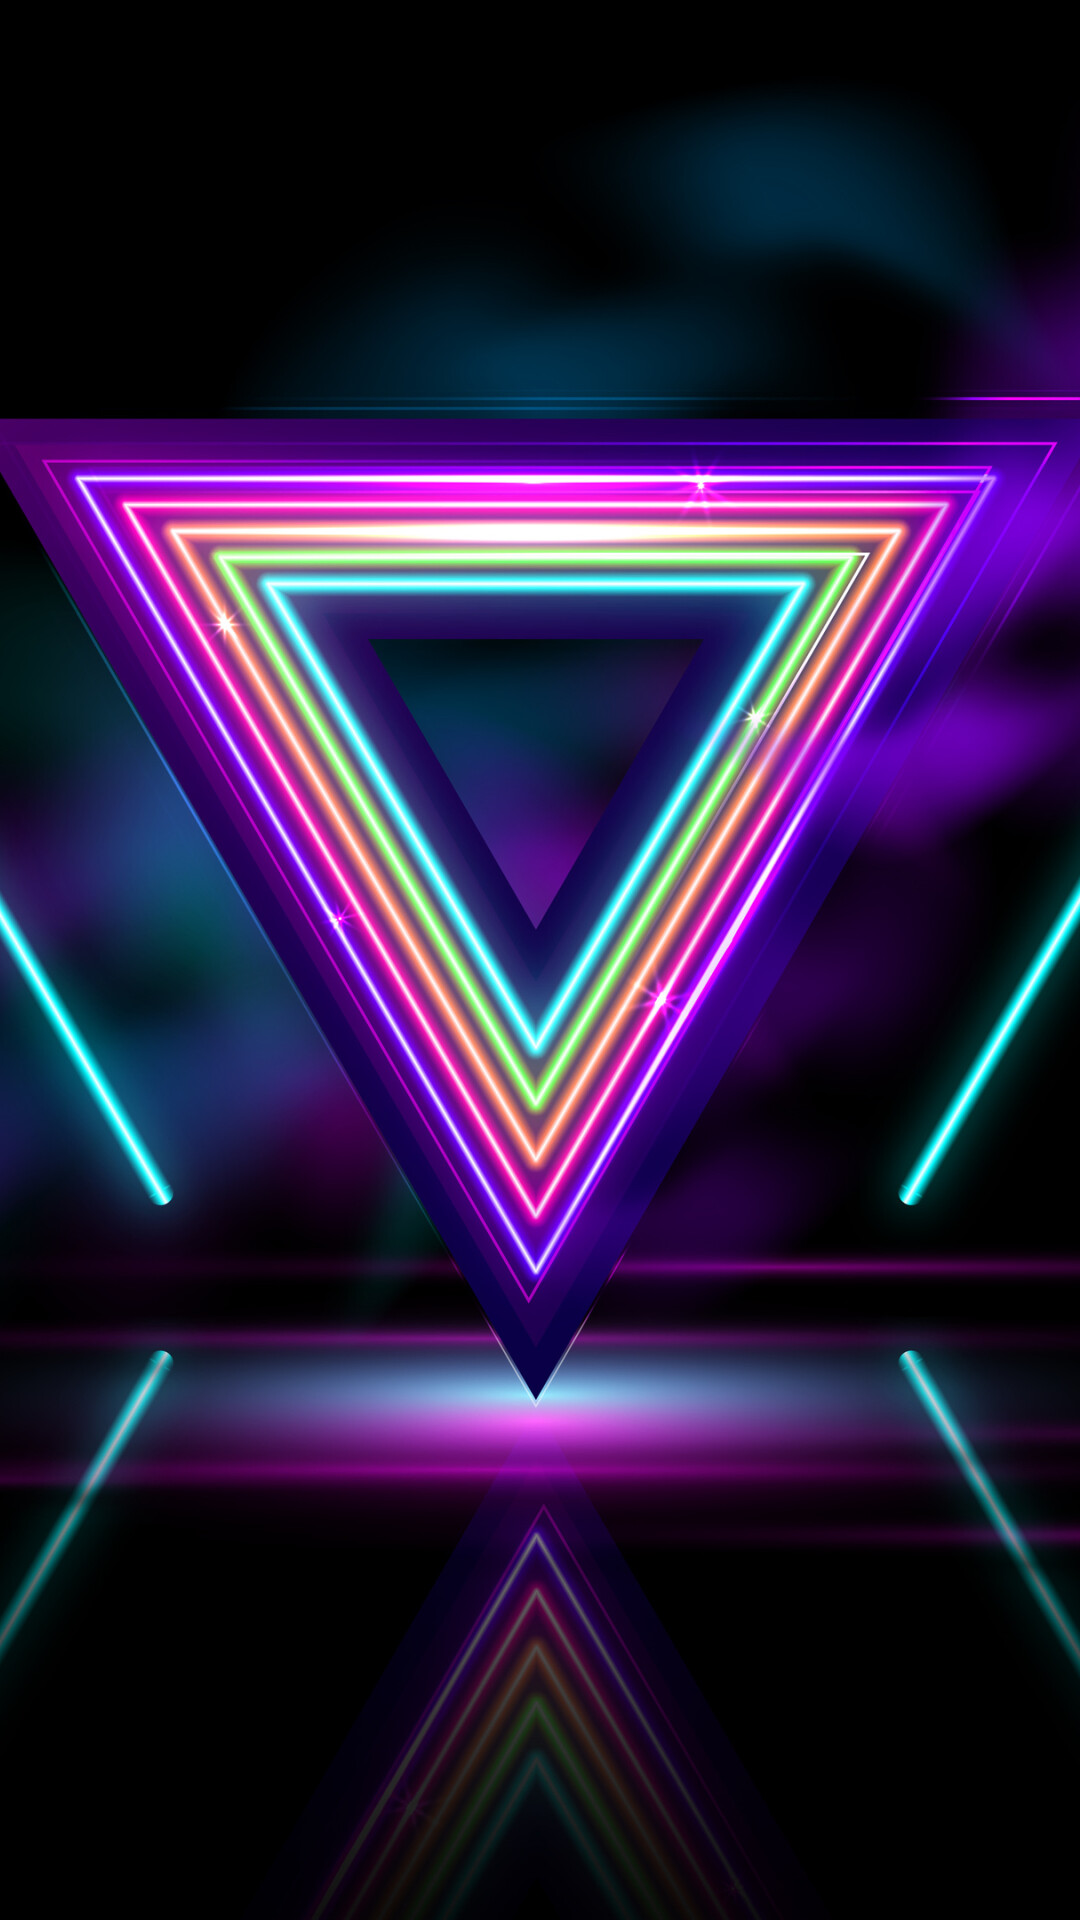 Triangle: Neon parallel line segments, Multicolored figures. 1080x1920 Full HD Wallpaper.